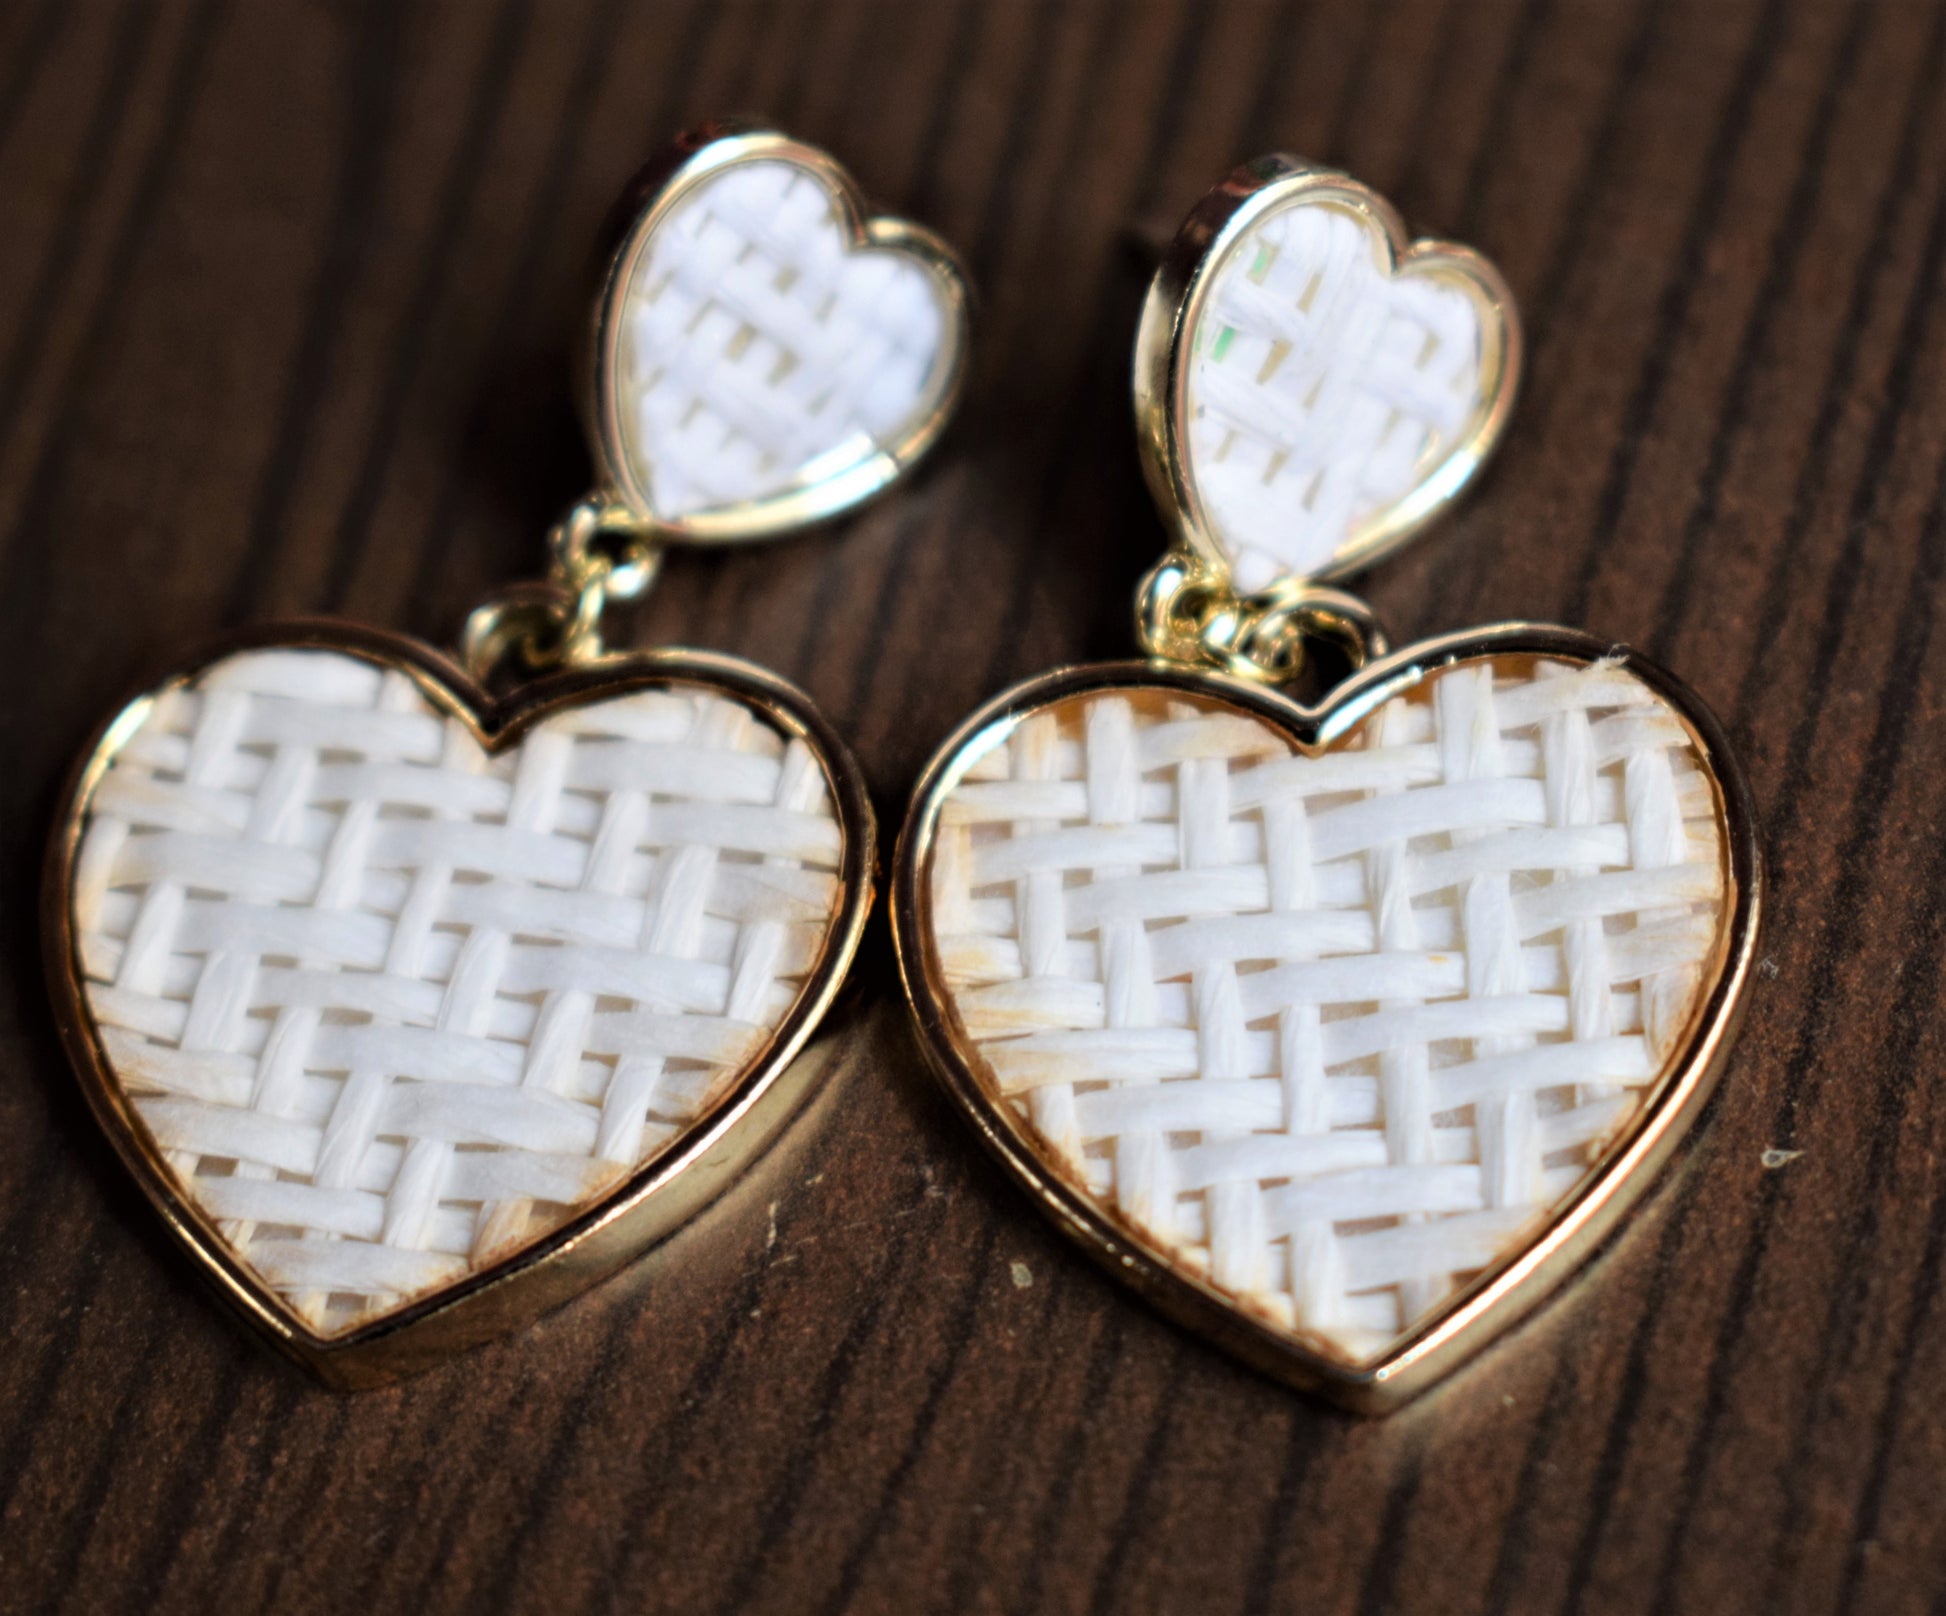 Wooden Weave Heart Earrings - GlitterGleam